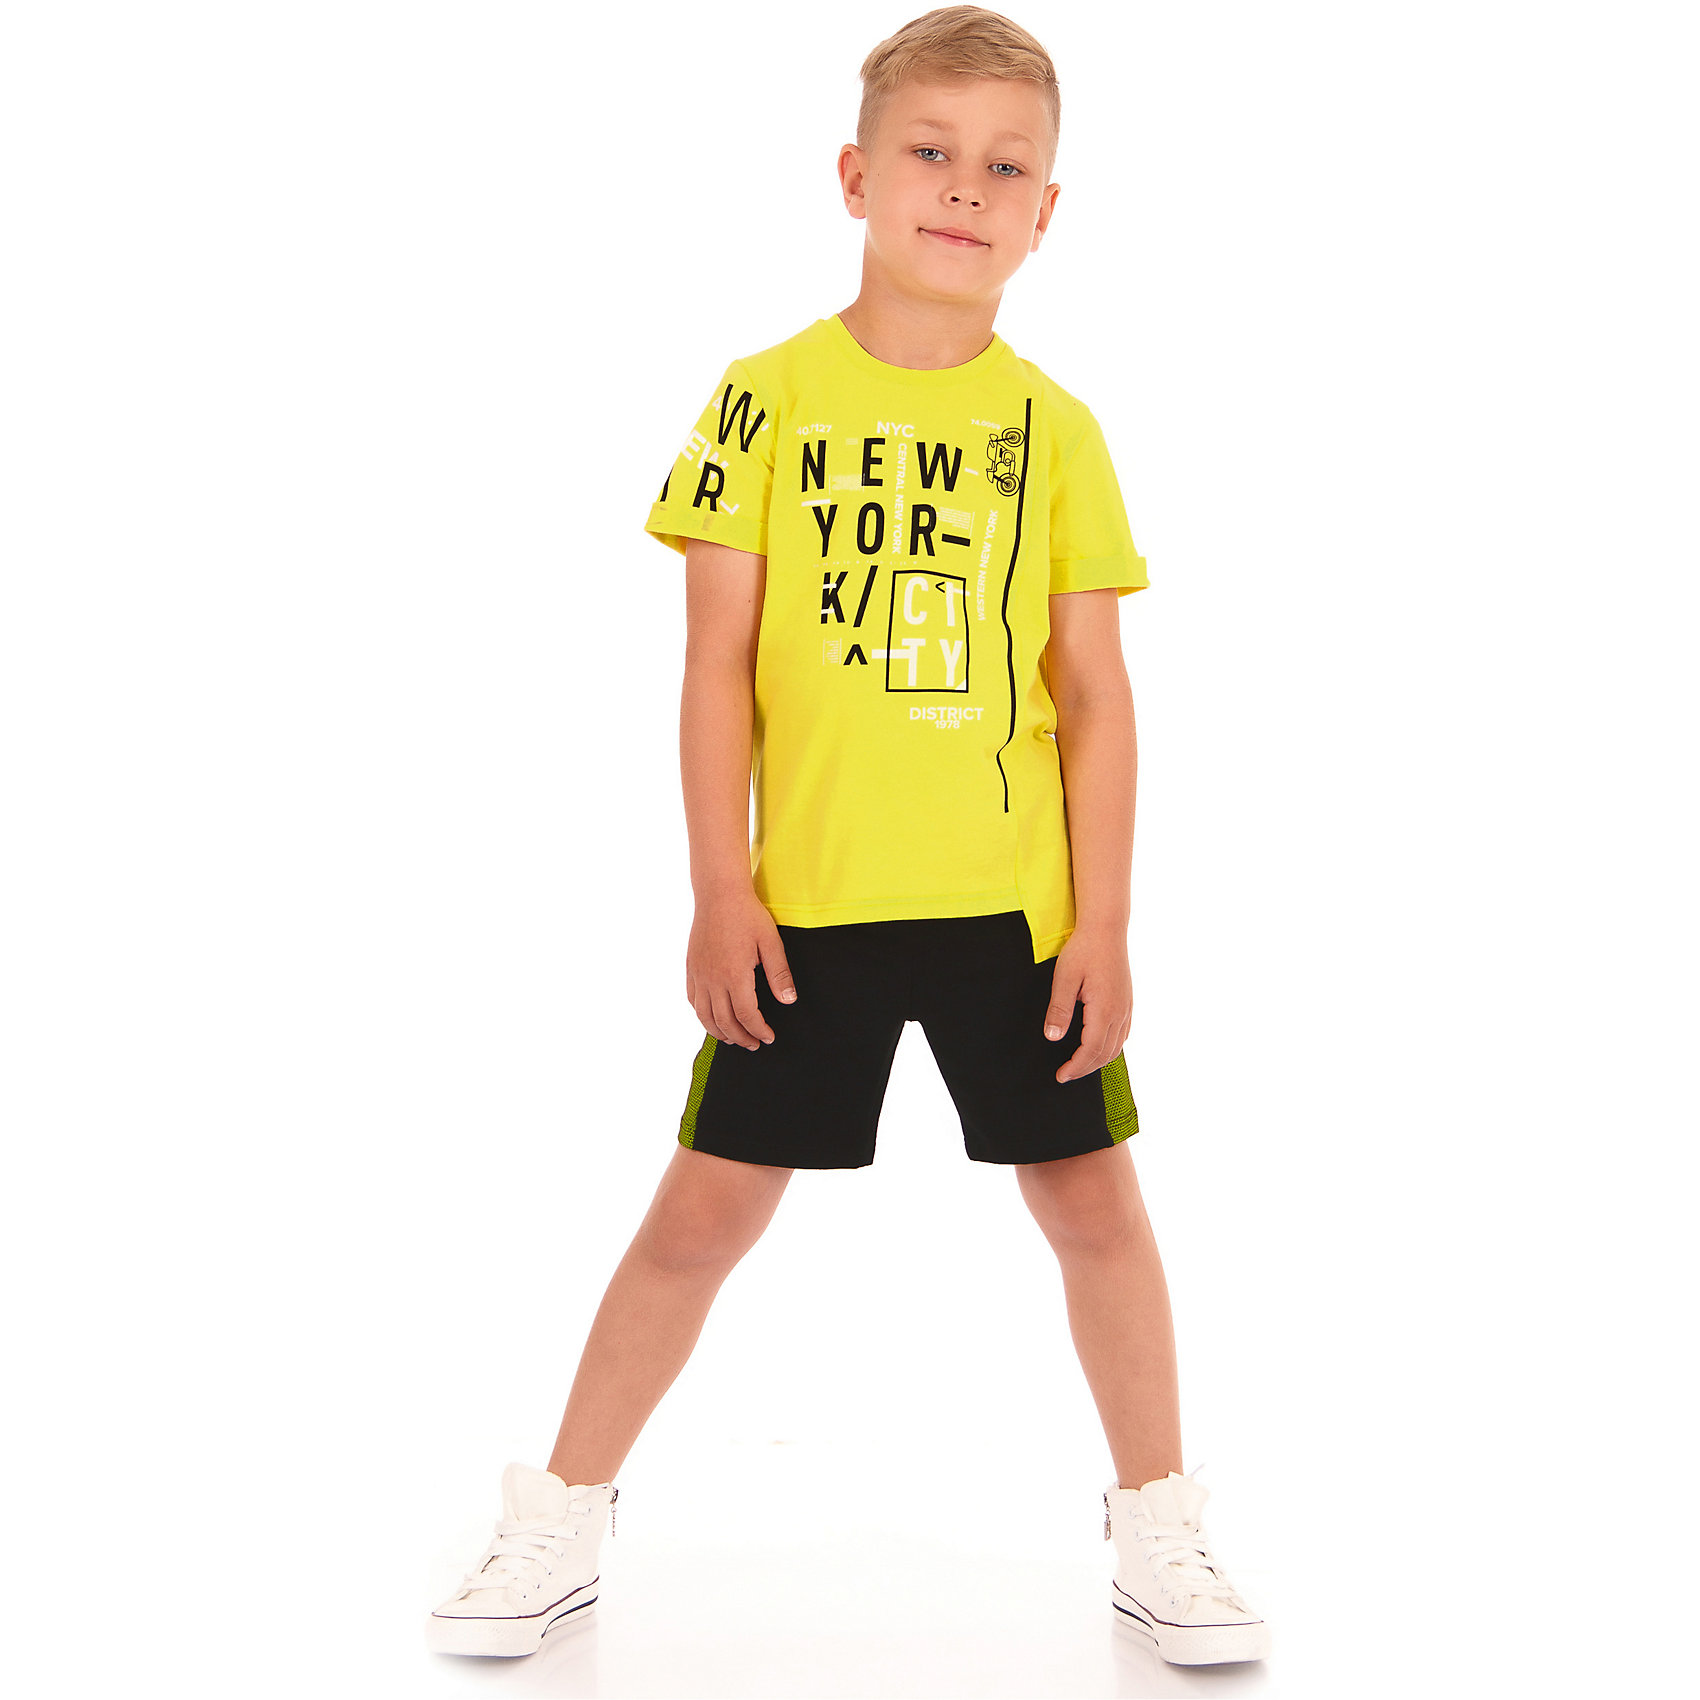 Желто черные шорты. Летные одежды для мальчиков. Летняя одежда для мальчиков. Летний костюм для мальчика. Футболки для мальчиков 8 лет.